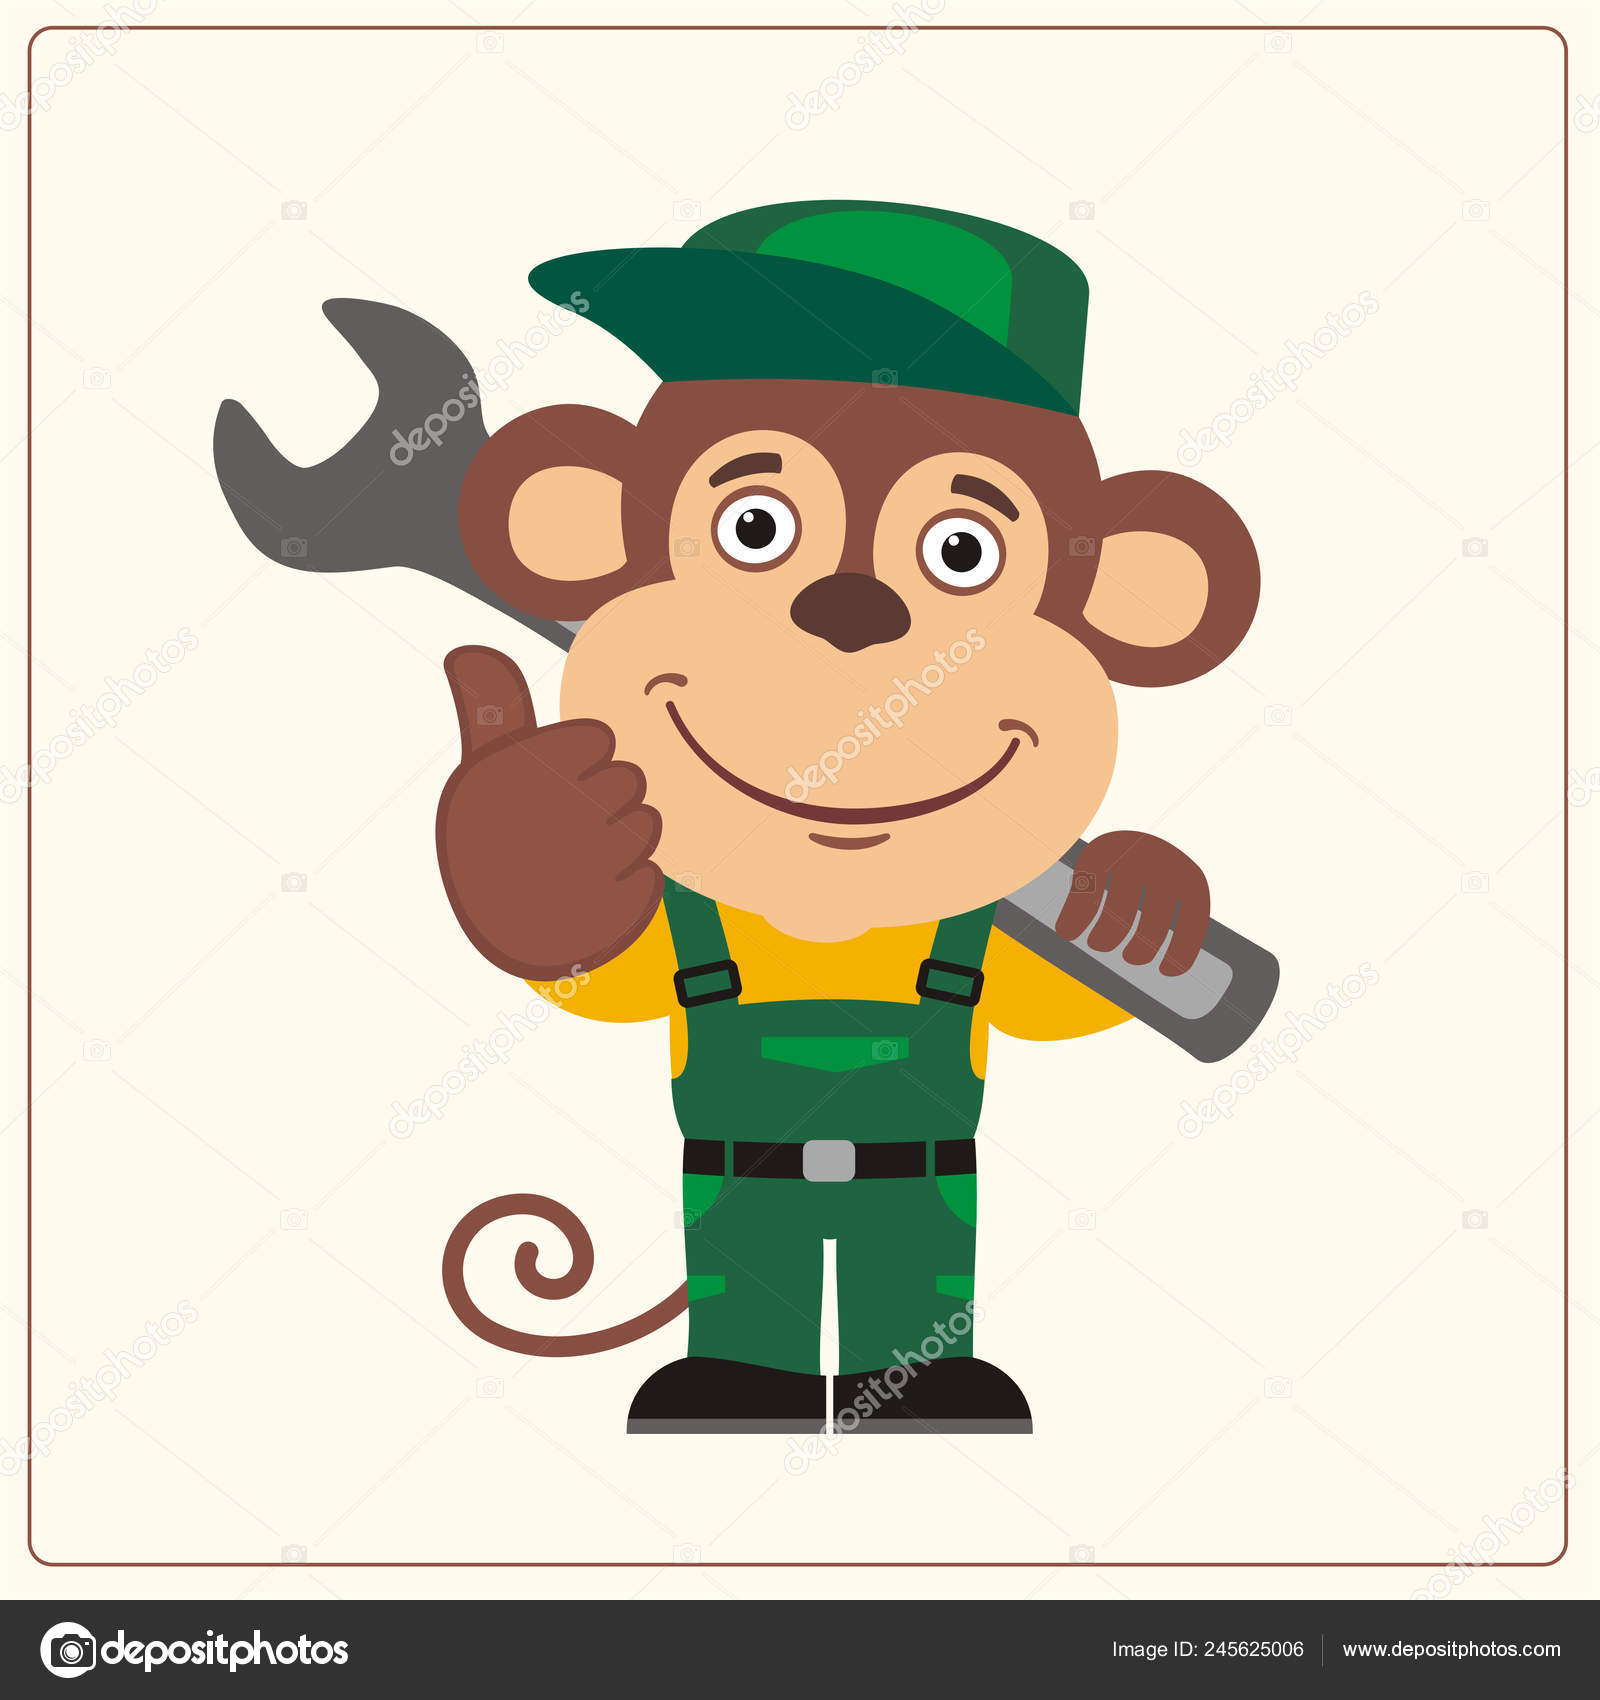 Vectores e ilustraciones de Mono mecanico para descargar gratis